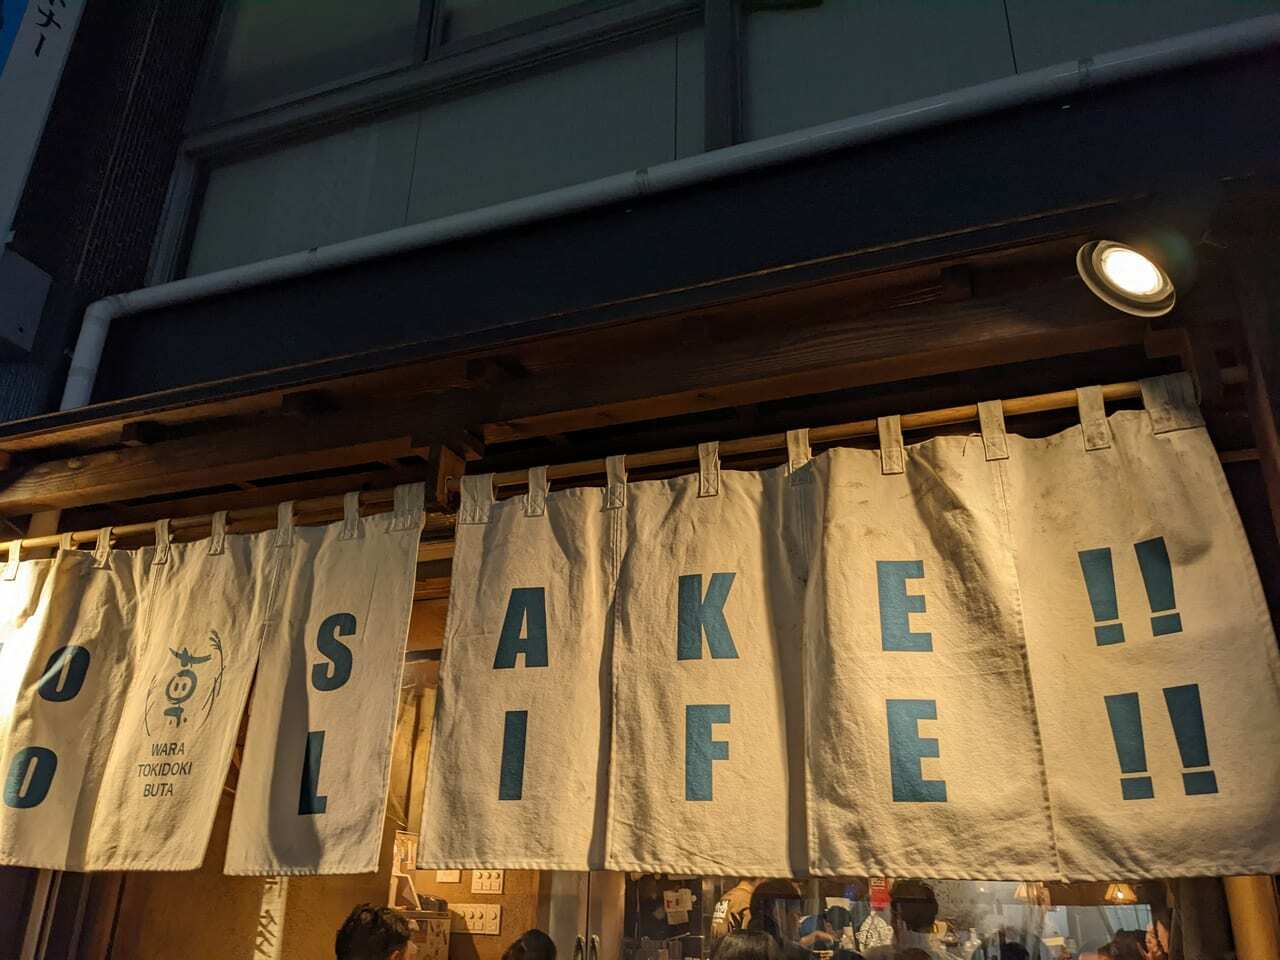 NO SAKE!! NO LIFE!!